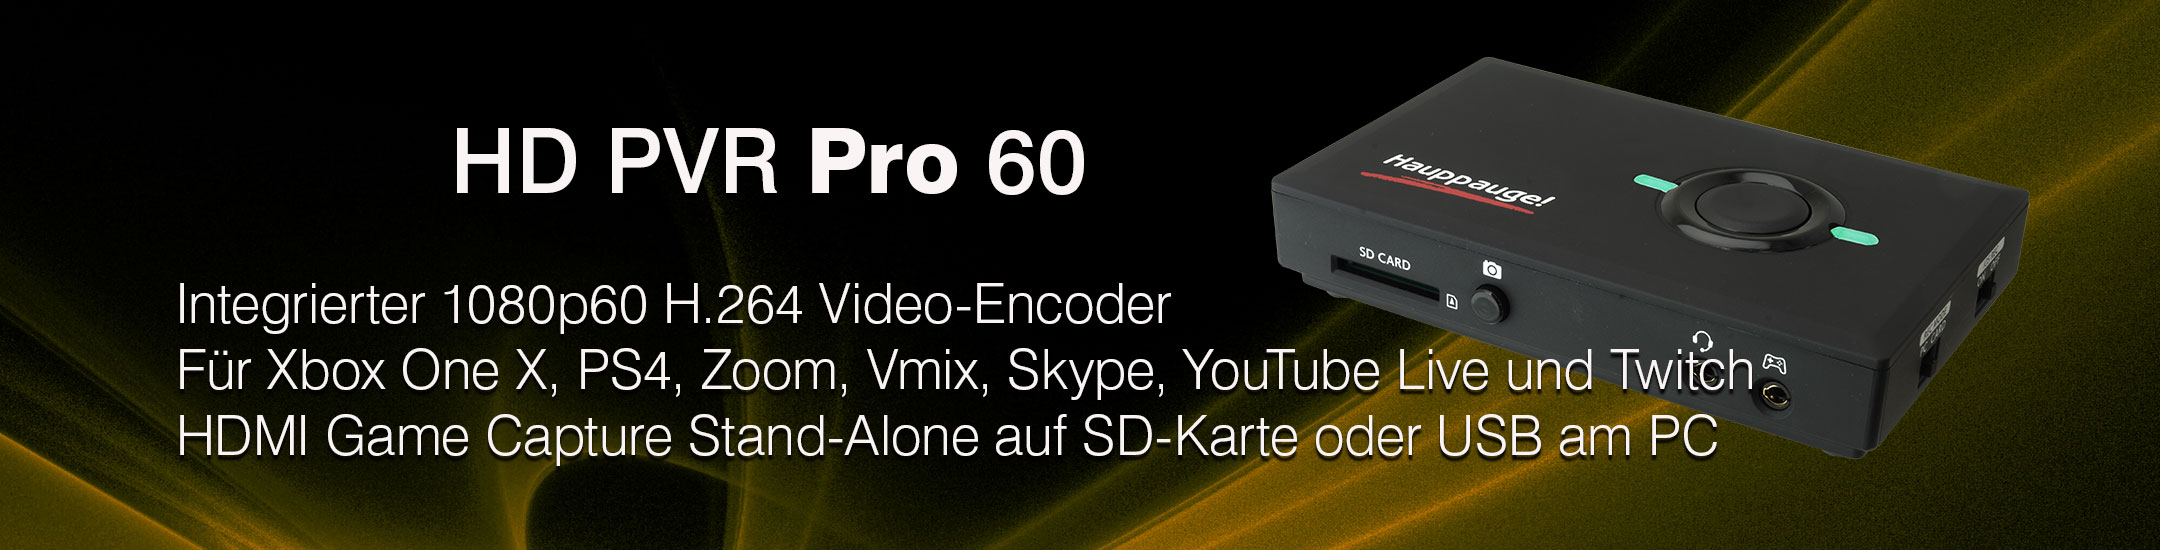 HD PVR Pro 60